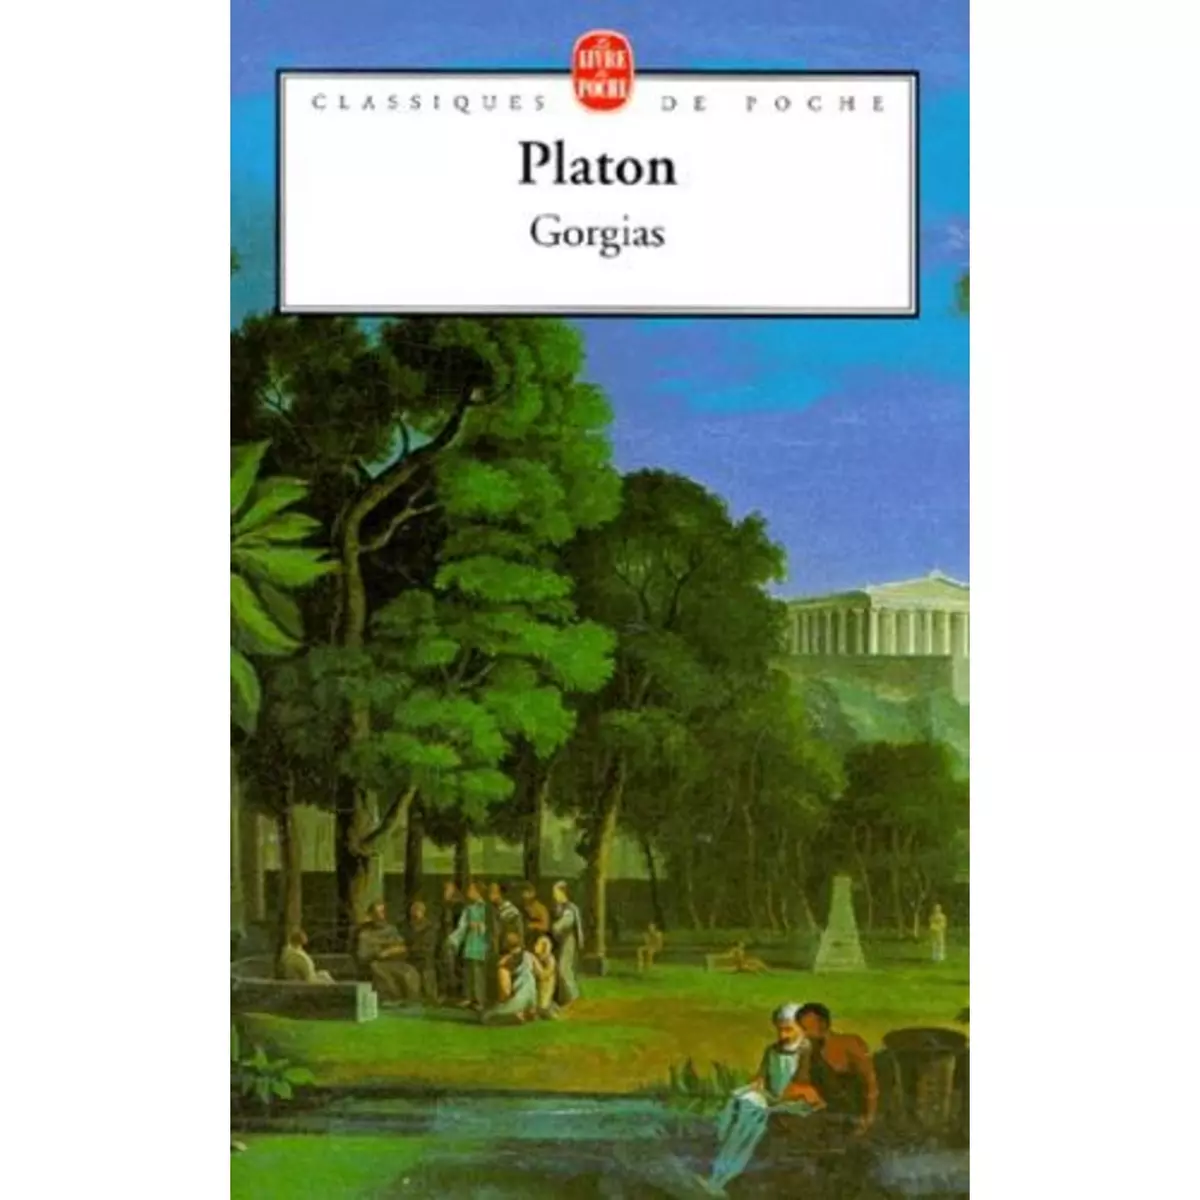  GORGIAS, Platon